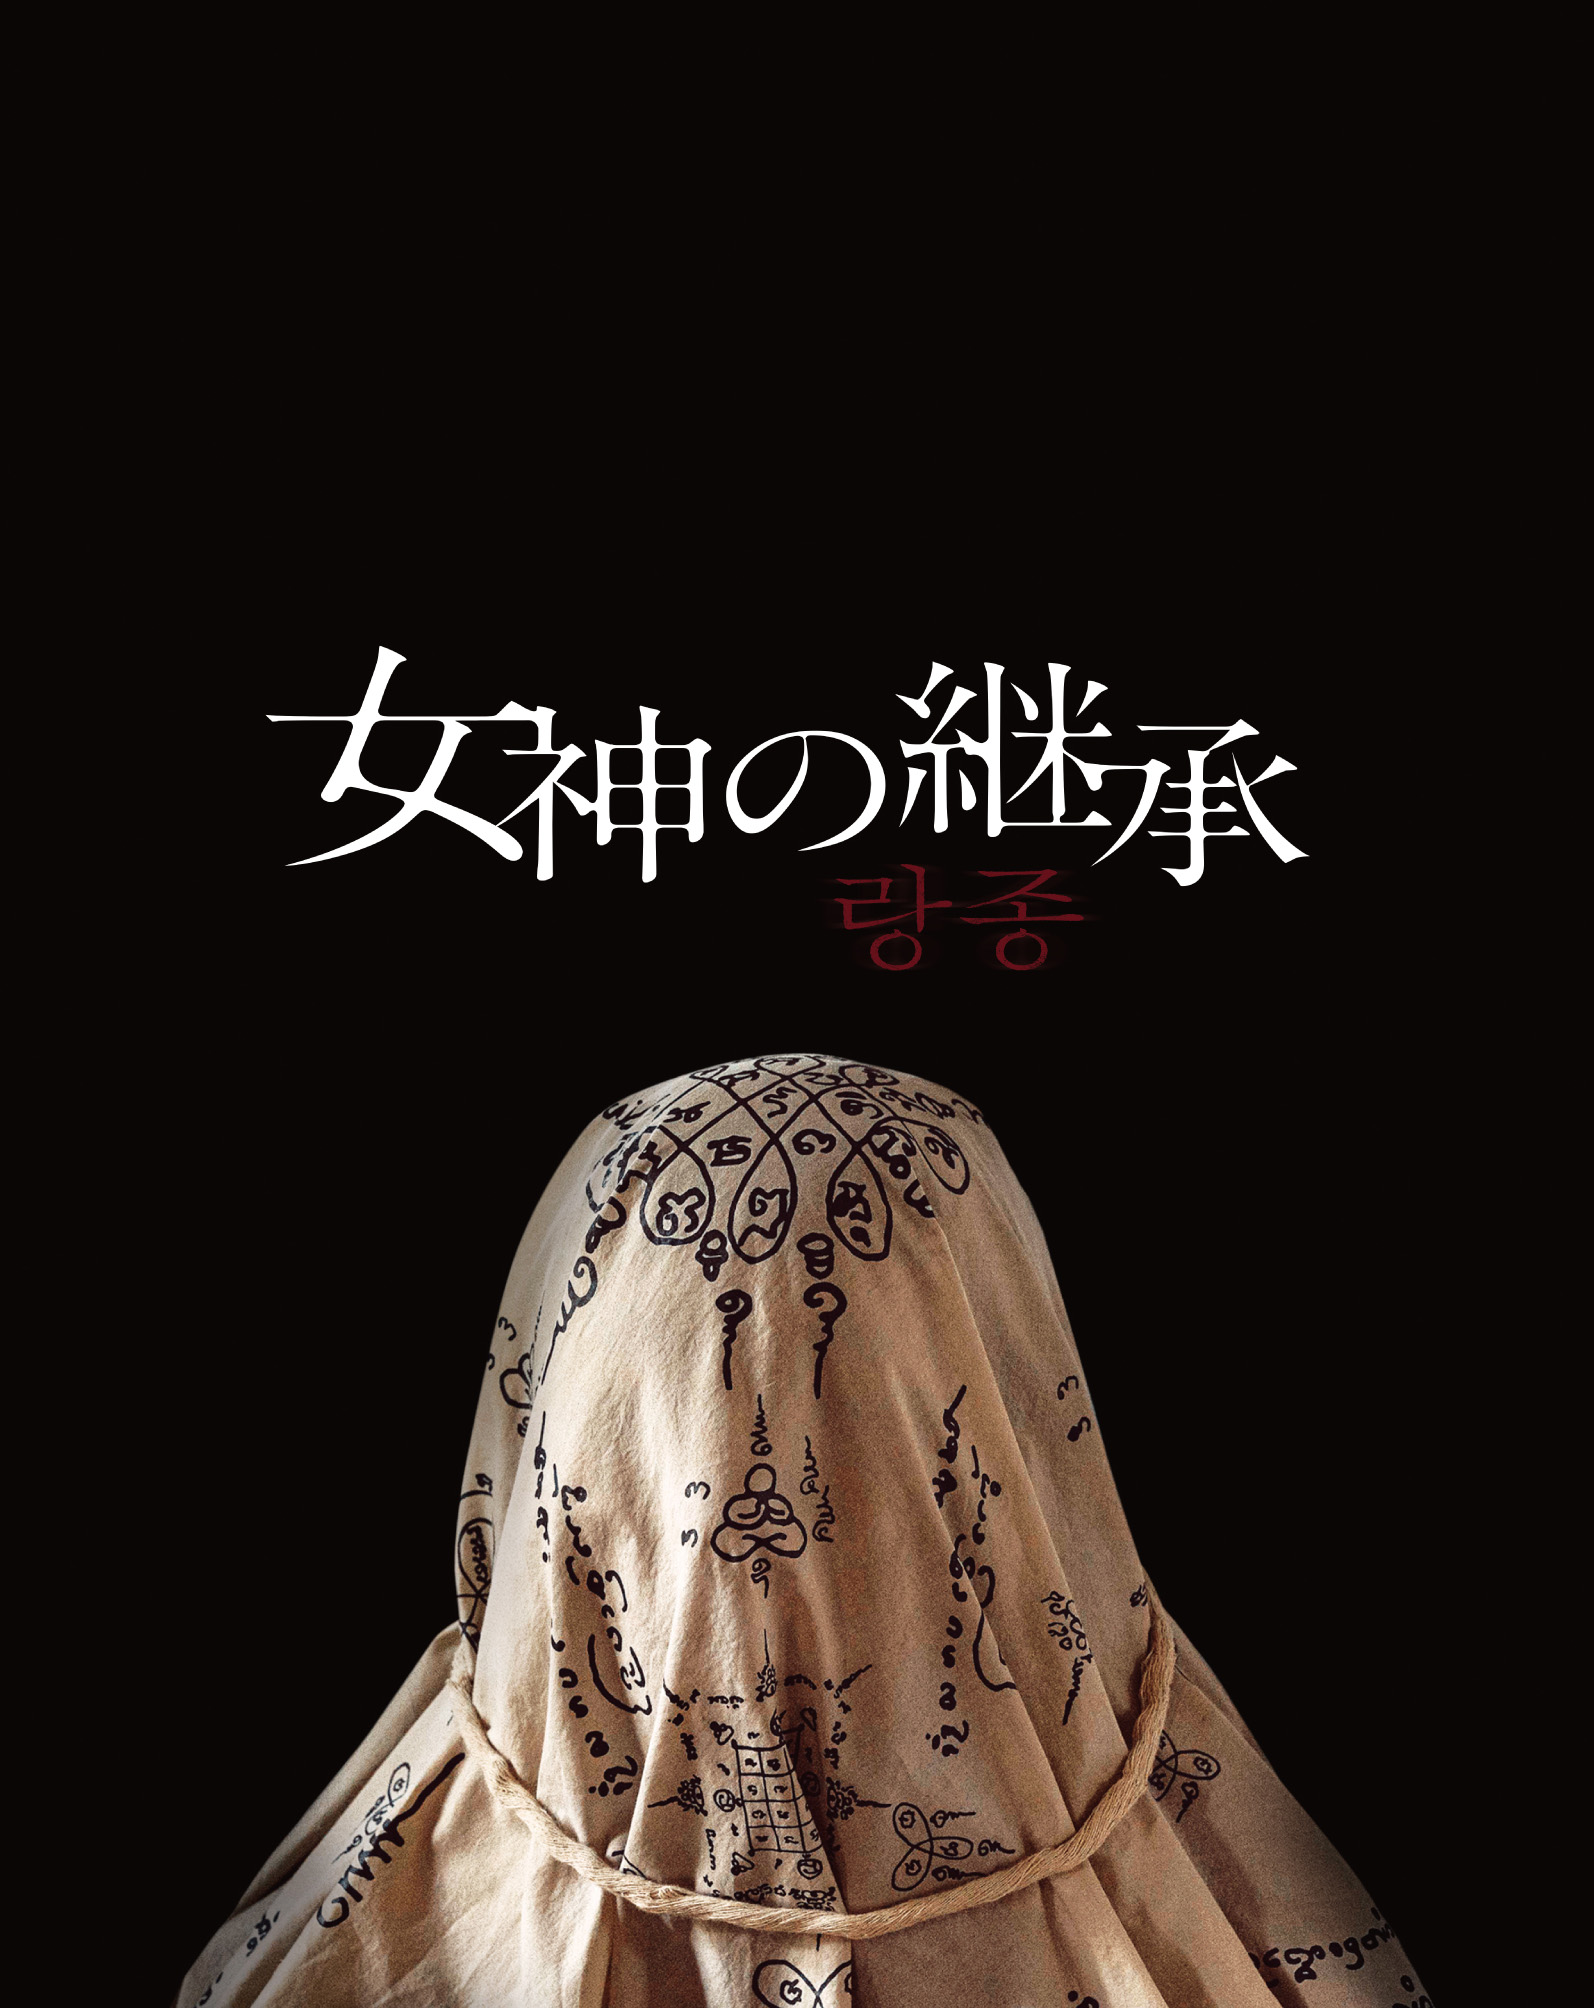 韓国感染スリラー「ダークホールー愛を奪う闇ー」DVD-BOXが9月2日発売決定